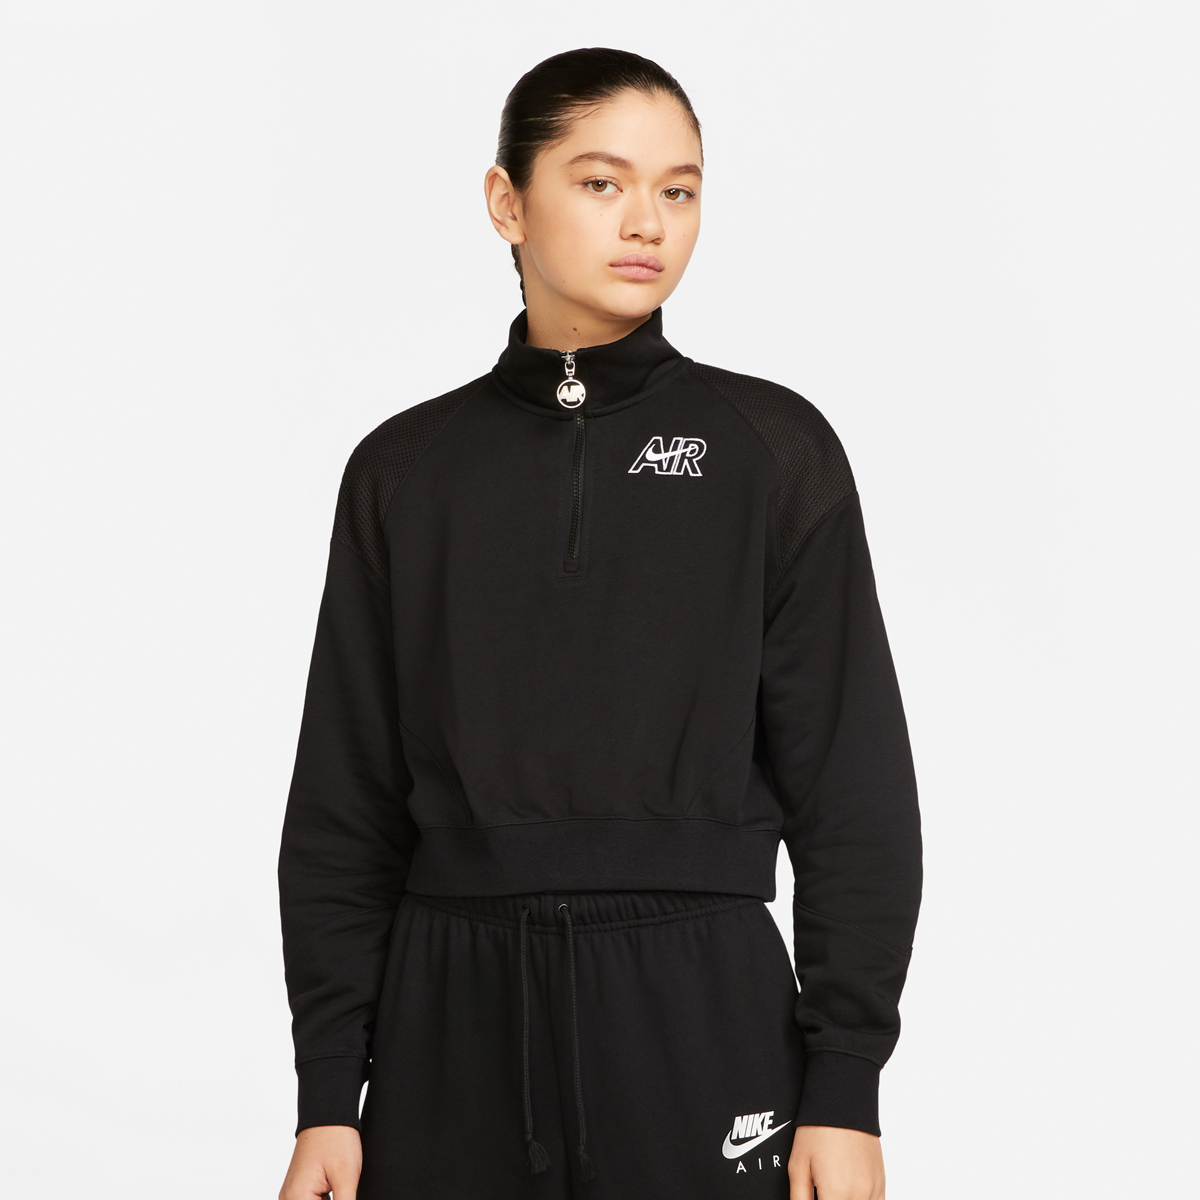 Productafbeelding: Sportswear Air Womens 1 4 Zip Fleece Top